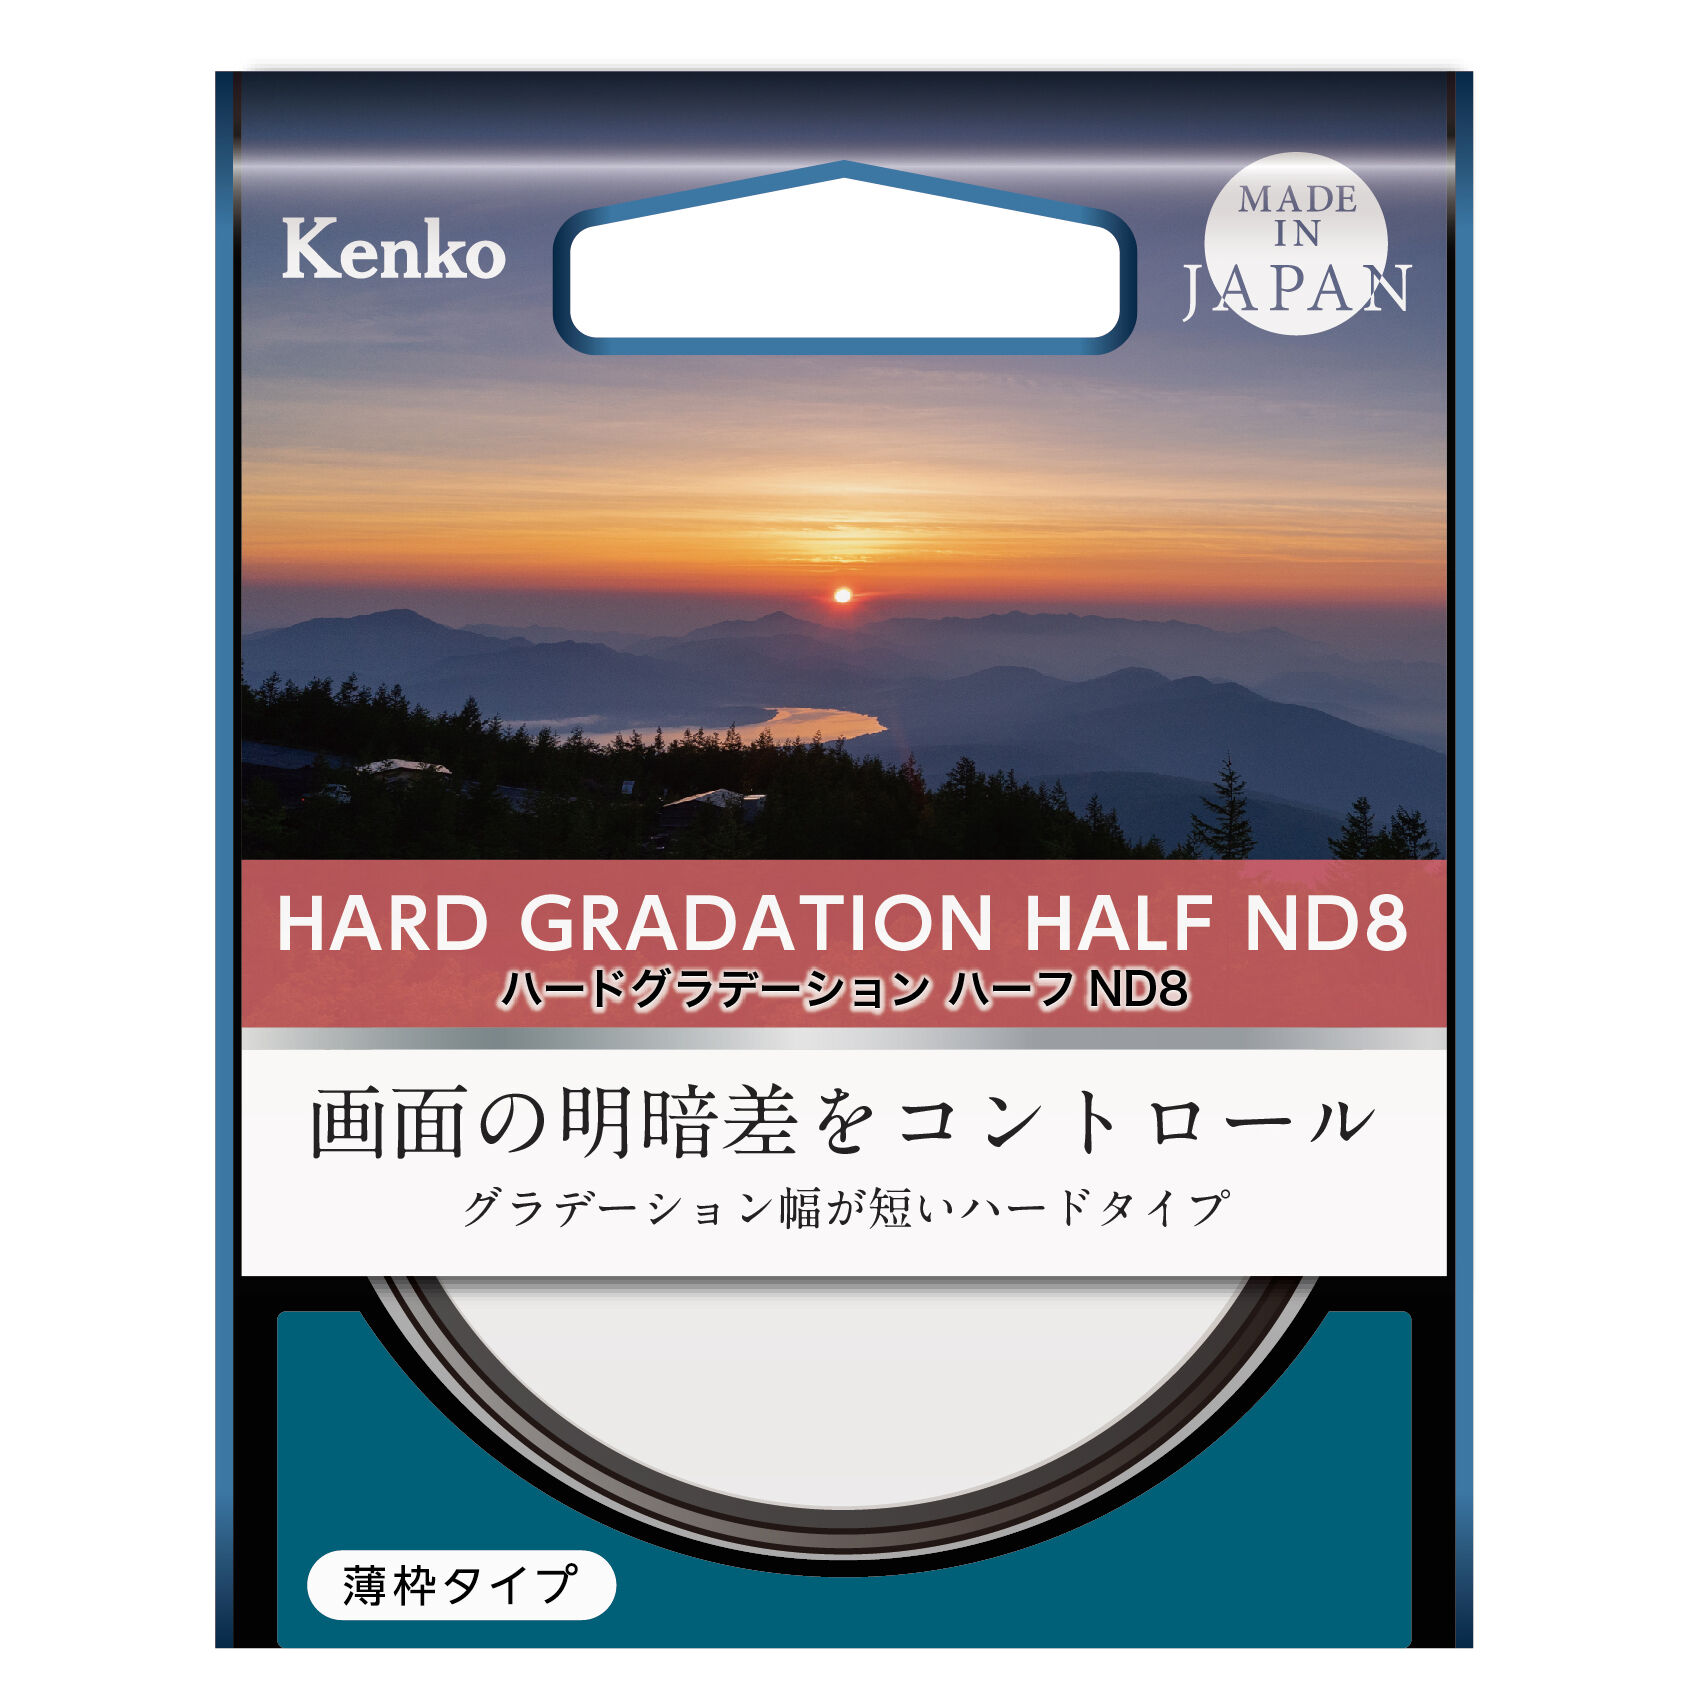 ハードグラデーション ハーフND8 | ケンコー・トキナー